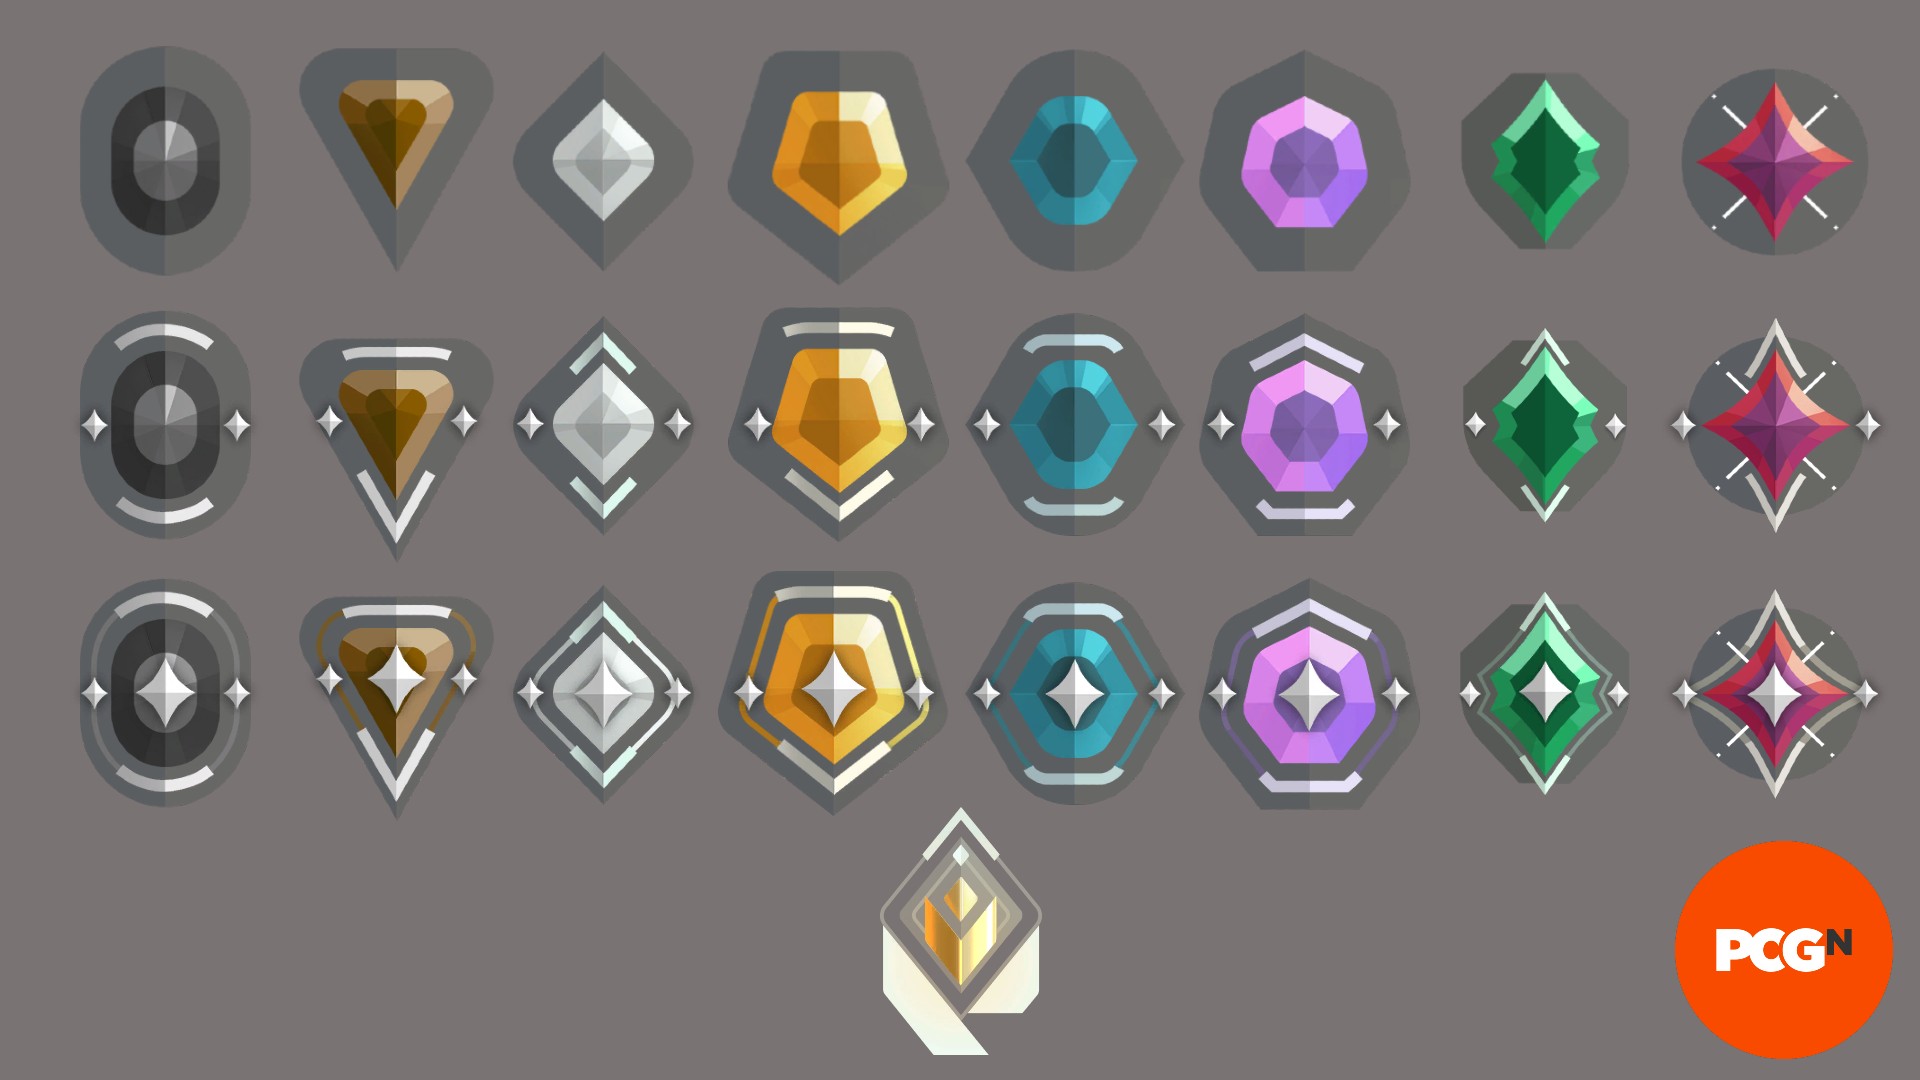 Una imagen con todos los íconos de rango valorant disponibles en el juego